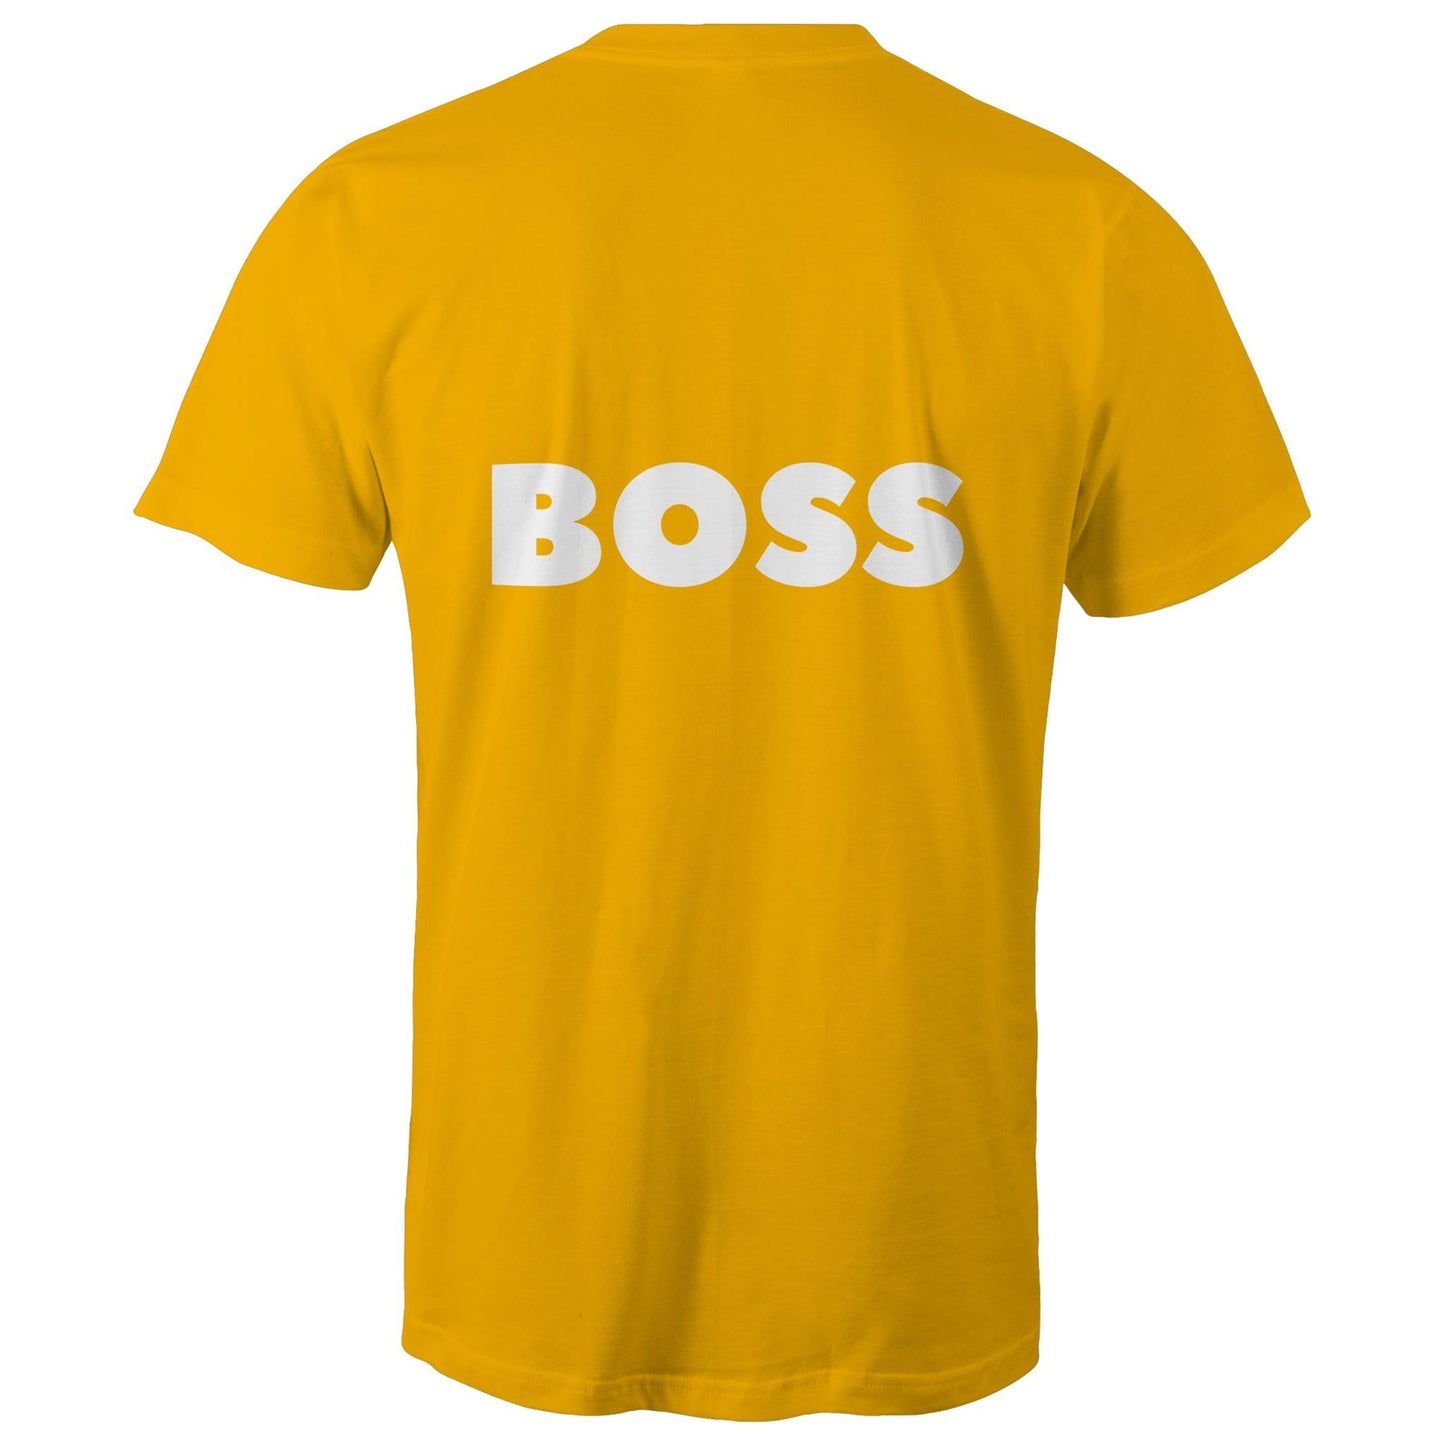 BOSS - Unisex T-Shirt